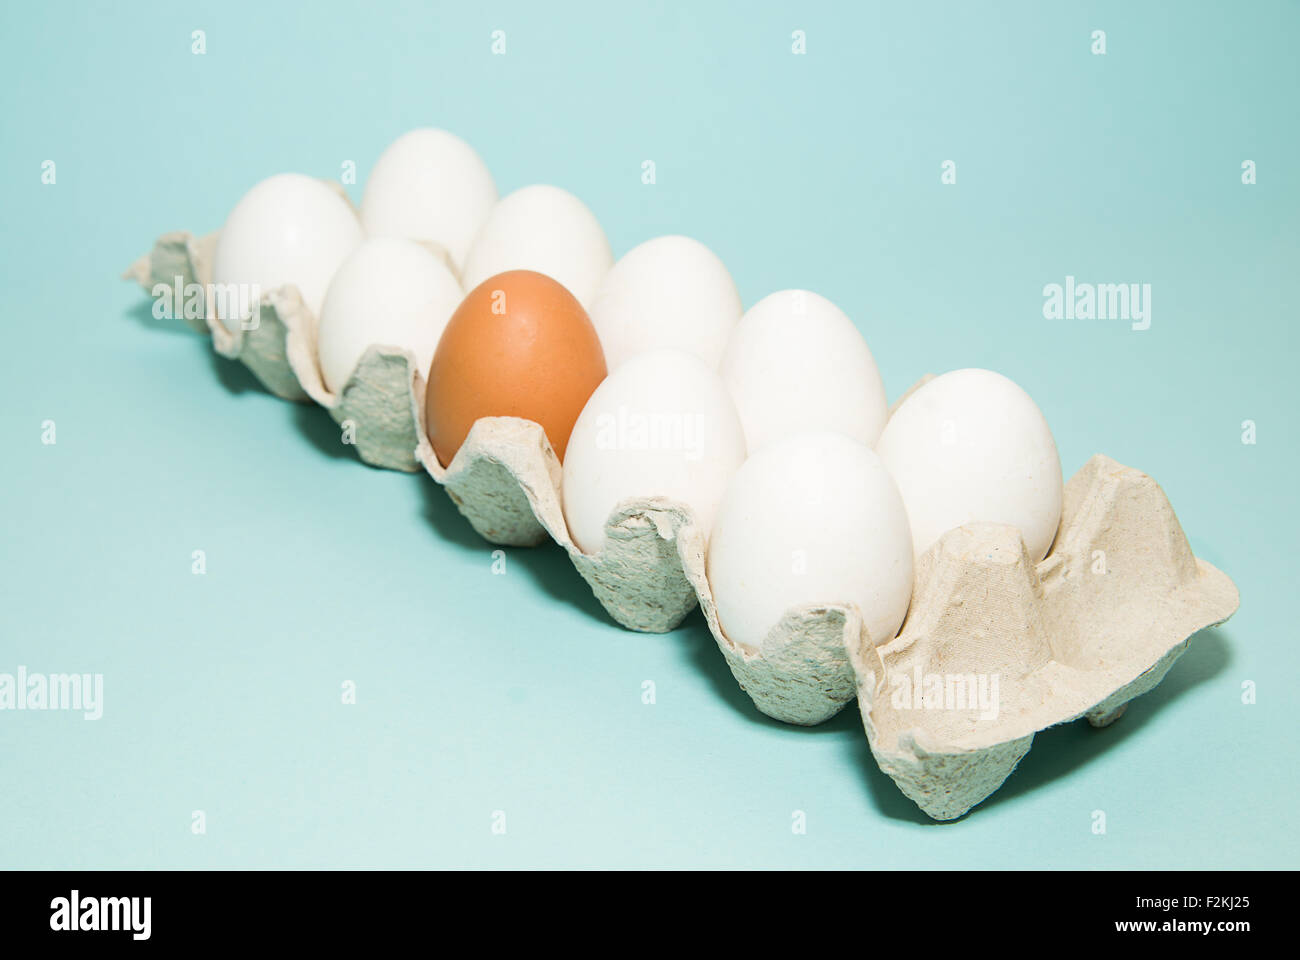 Uova di gallina di diversi colori nella confezione Foto Stock